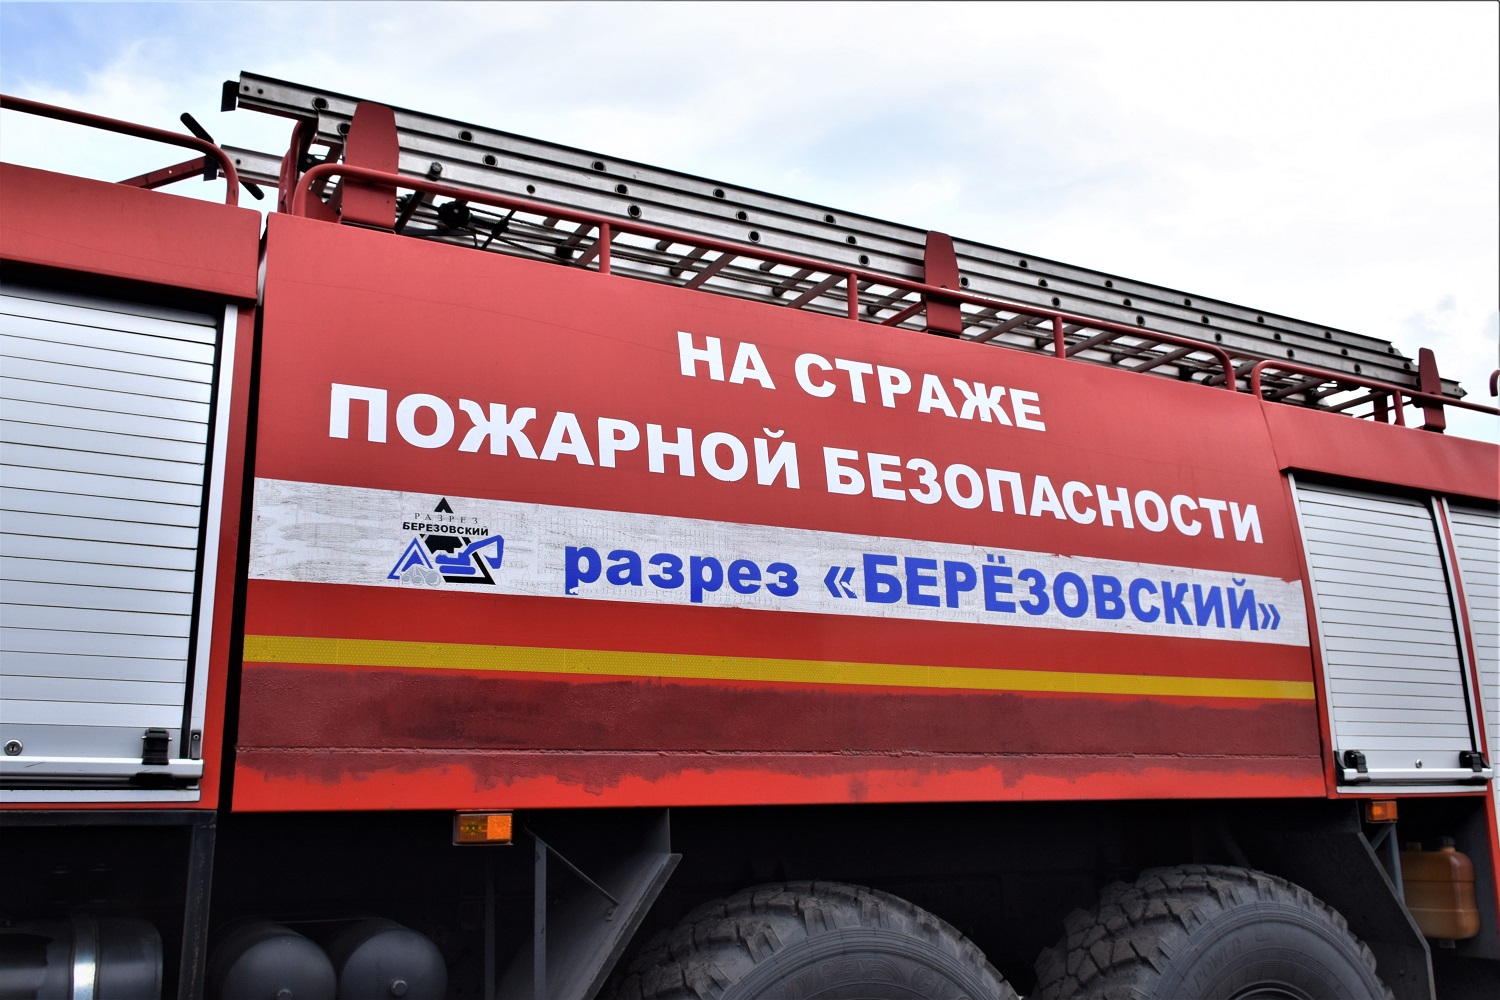 Разрез Березовский помогает обеспечивать пожарную безопасность в Новокузнецком и Прокопьевском районах. Стройсервис